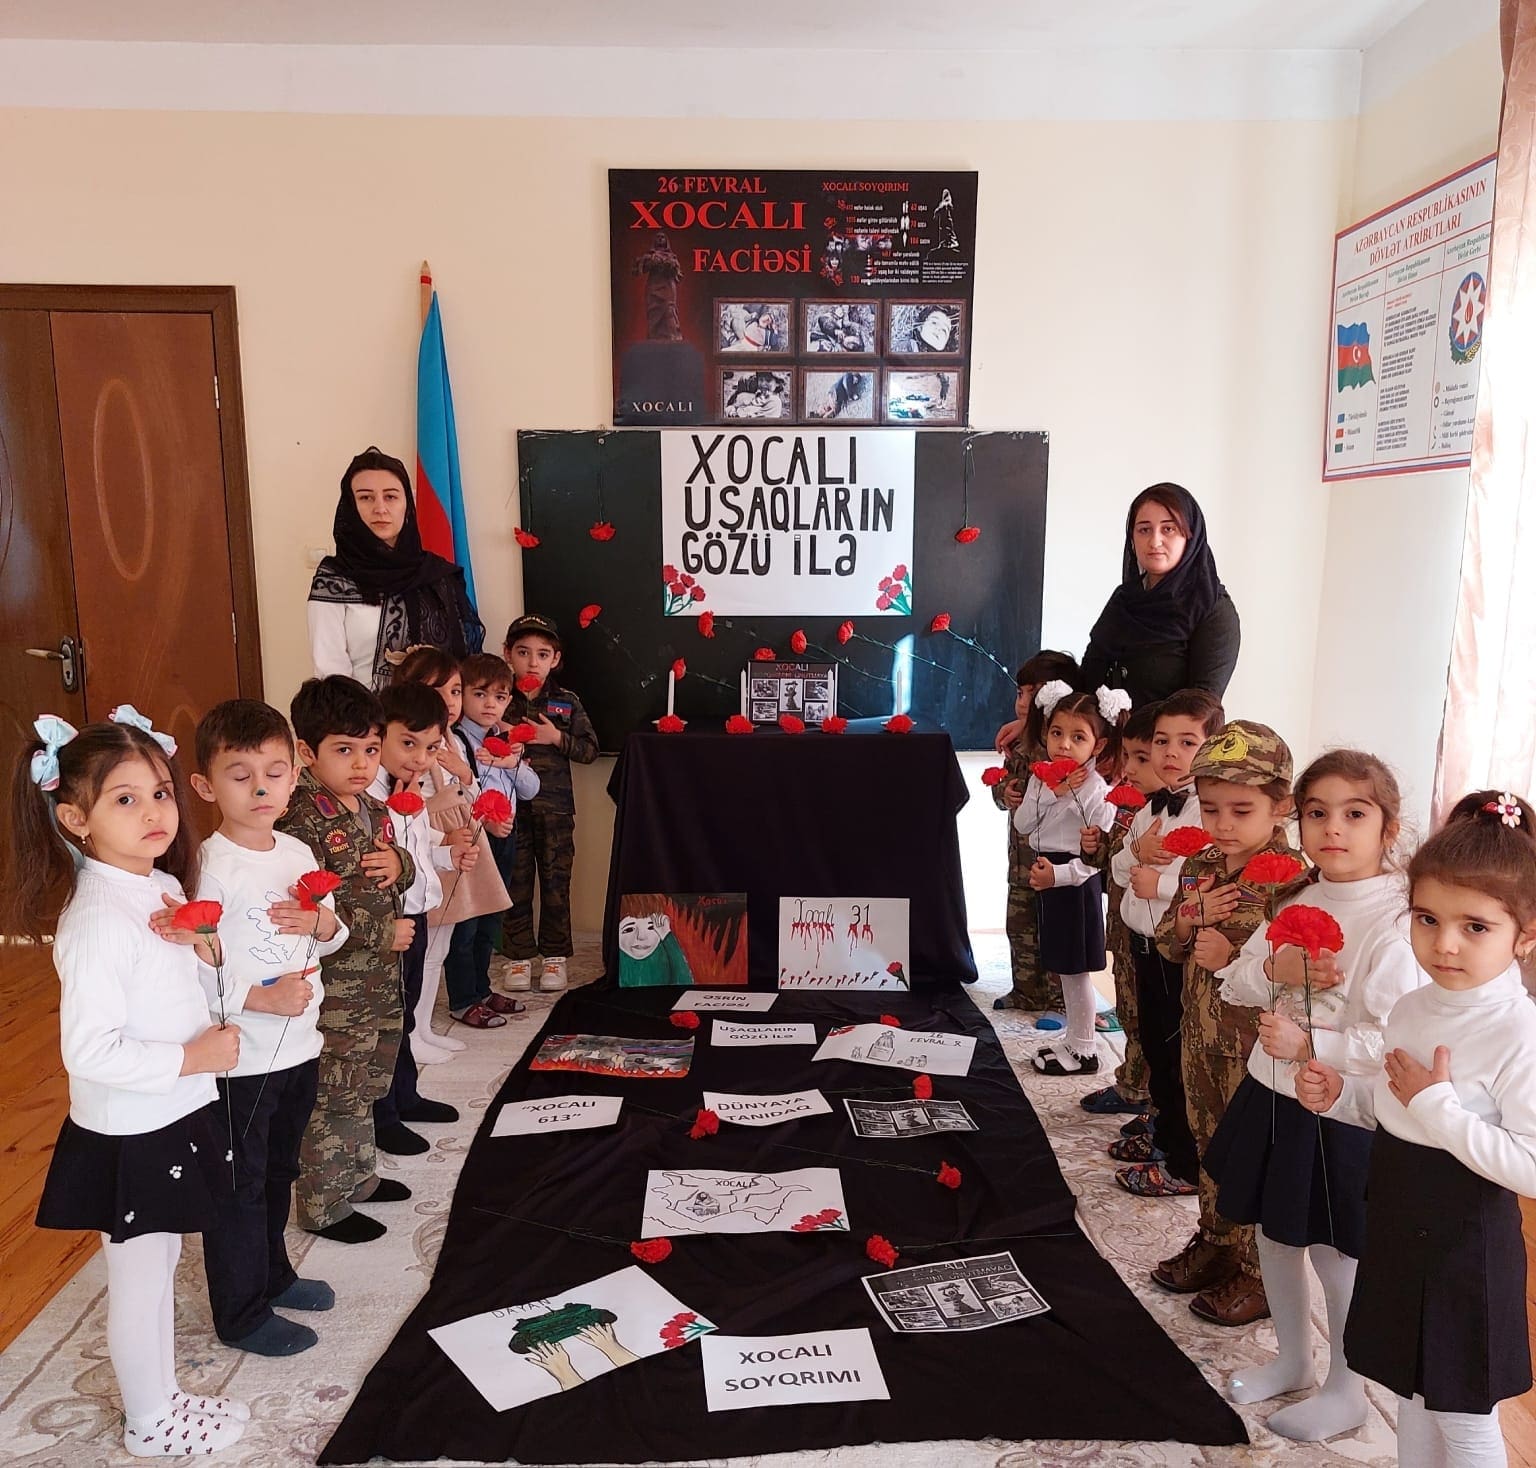 Ադրբեջանը մանկուց ատելություն է սերմանում հայերի նկատմամբ․ օկուպացված Հադրութի մանկապարտեզում միջոցառում է կայացել «Խաջալուն երեխաների աչքերով» վերտառությամբ